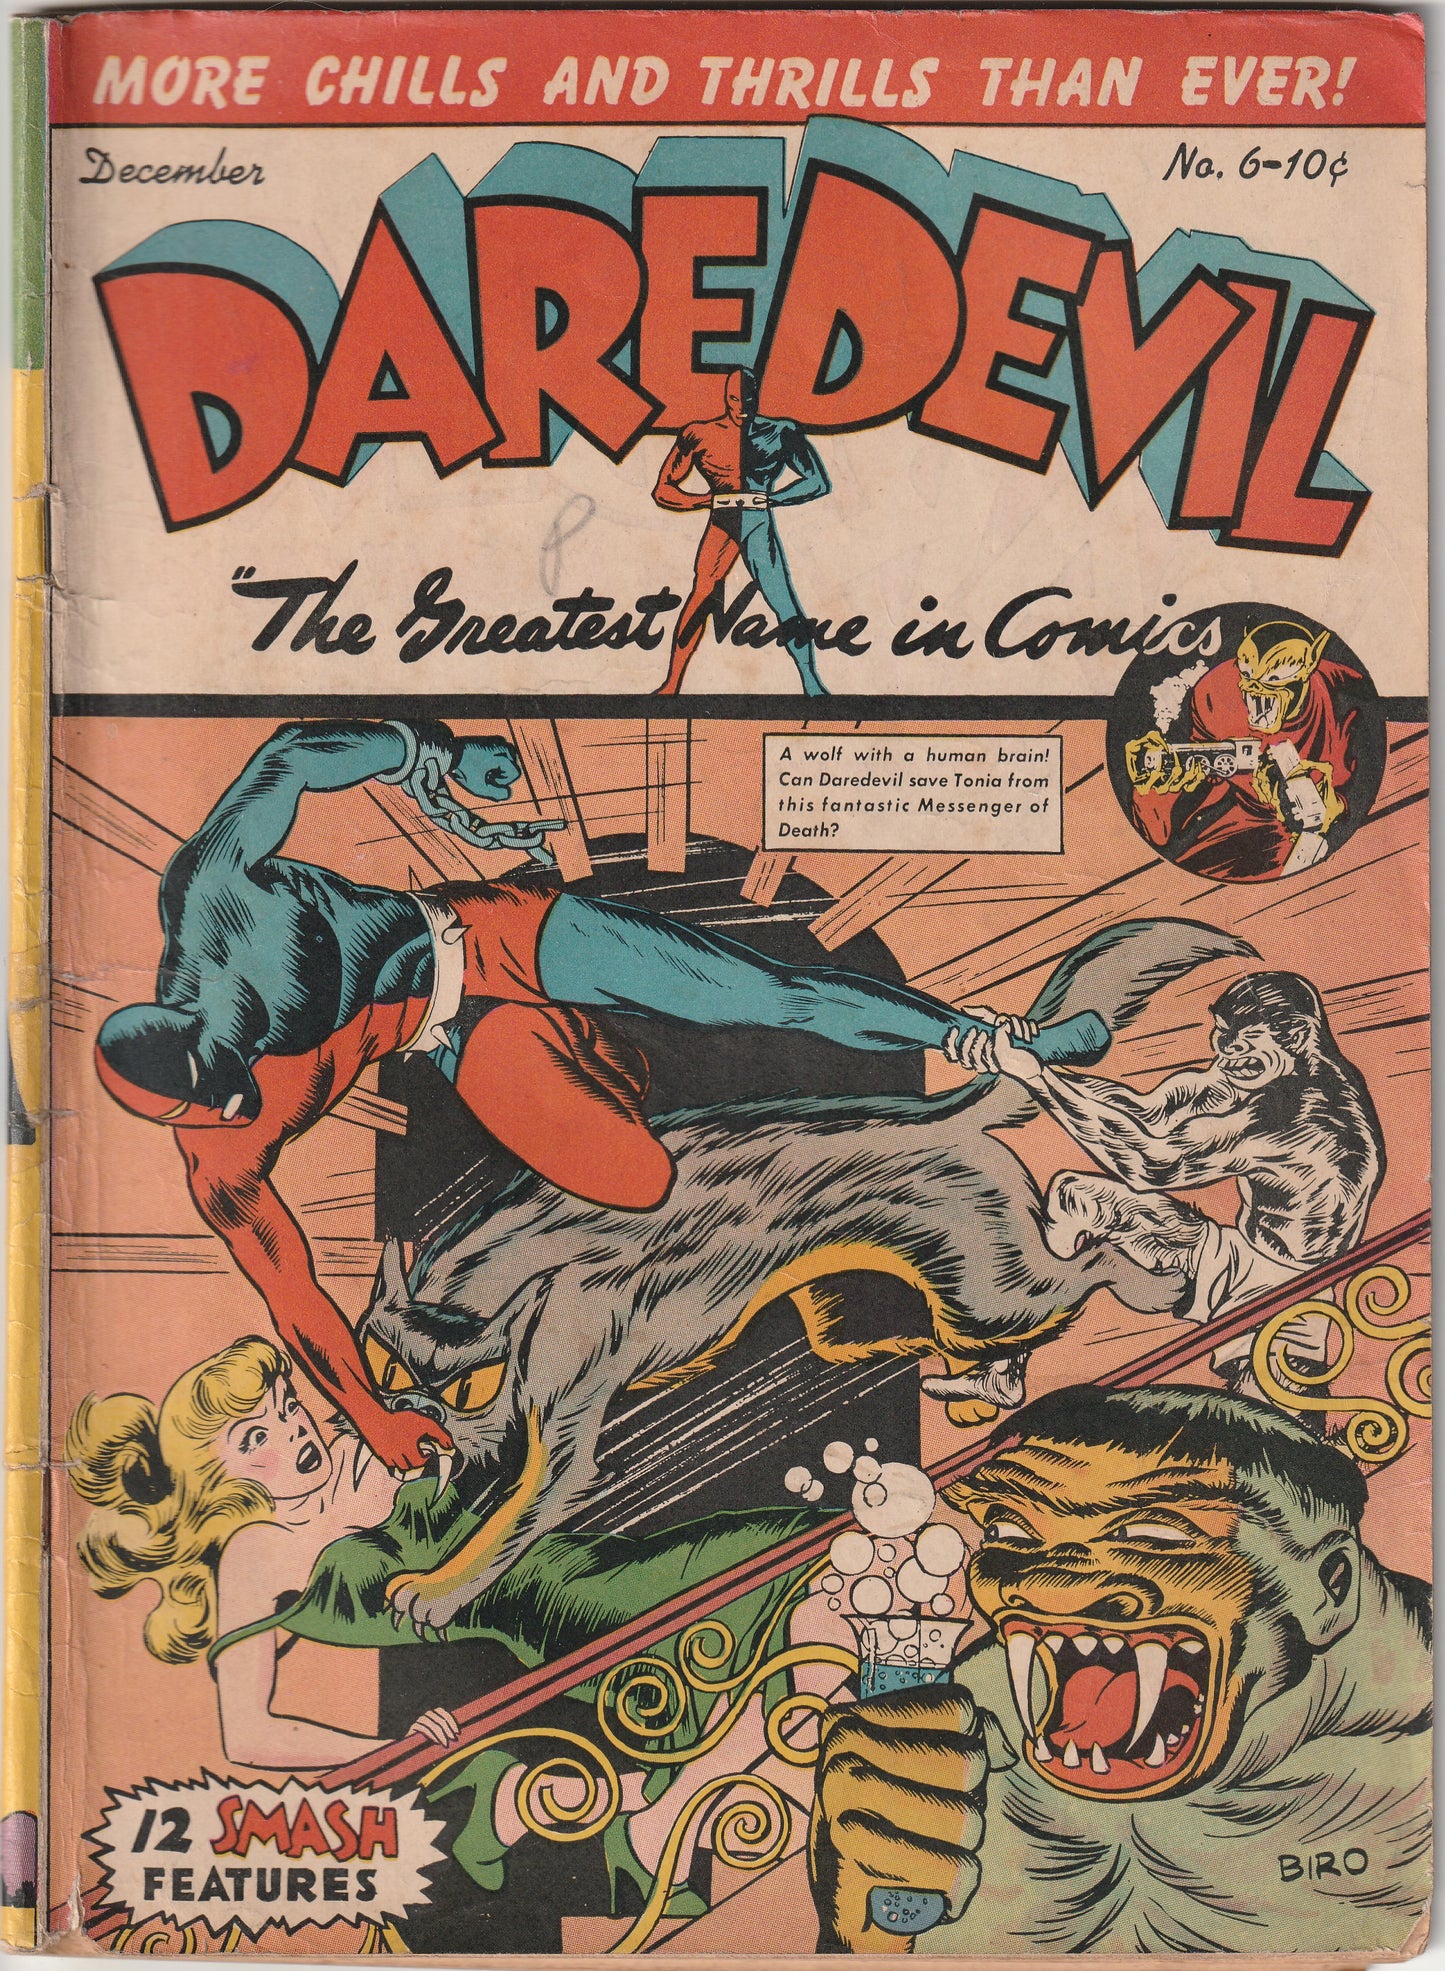 Daredevil #6 (1941) - Classic horror Charles Biro cover